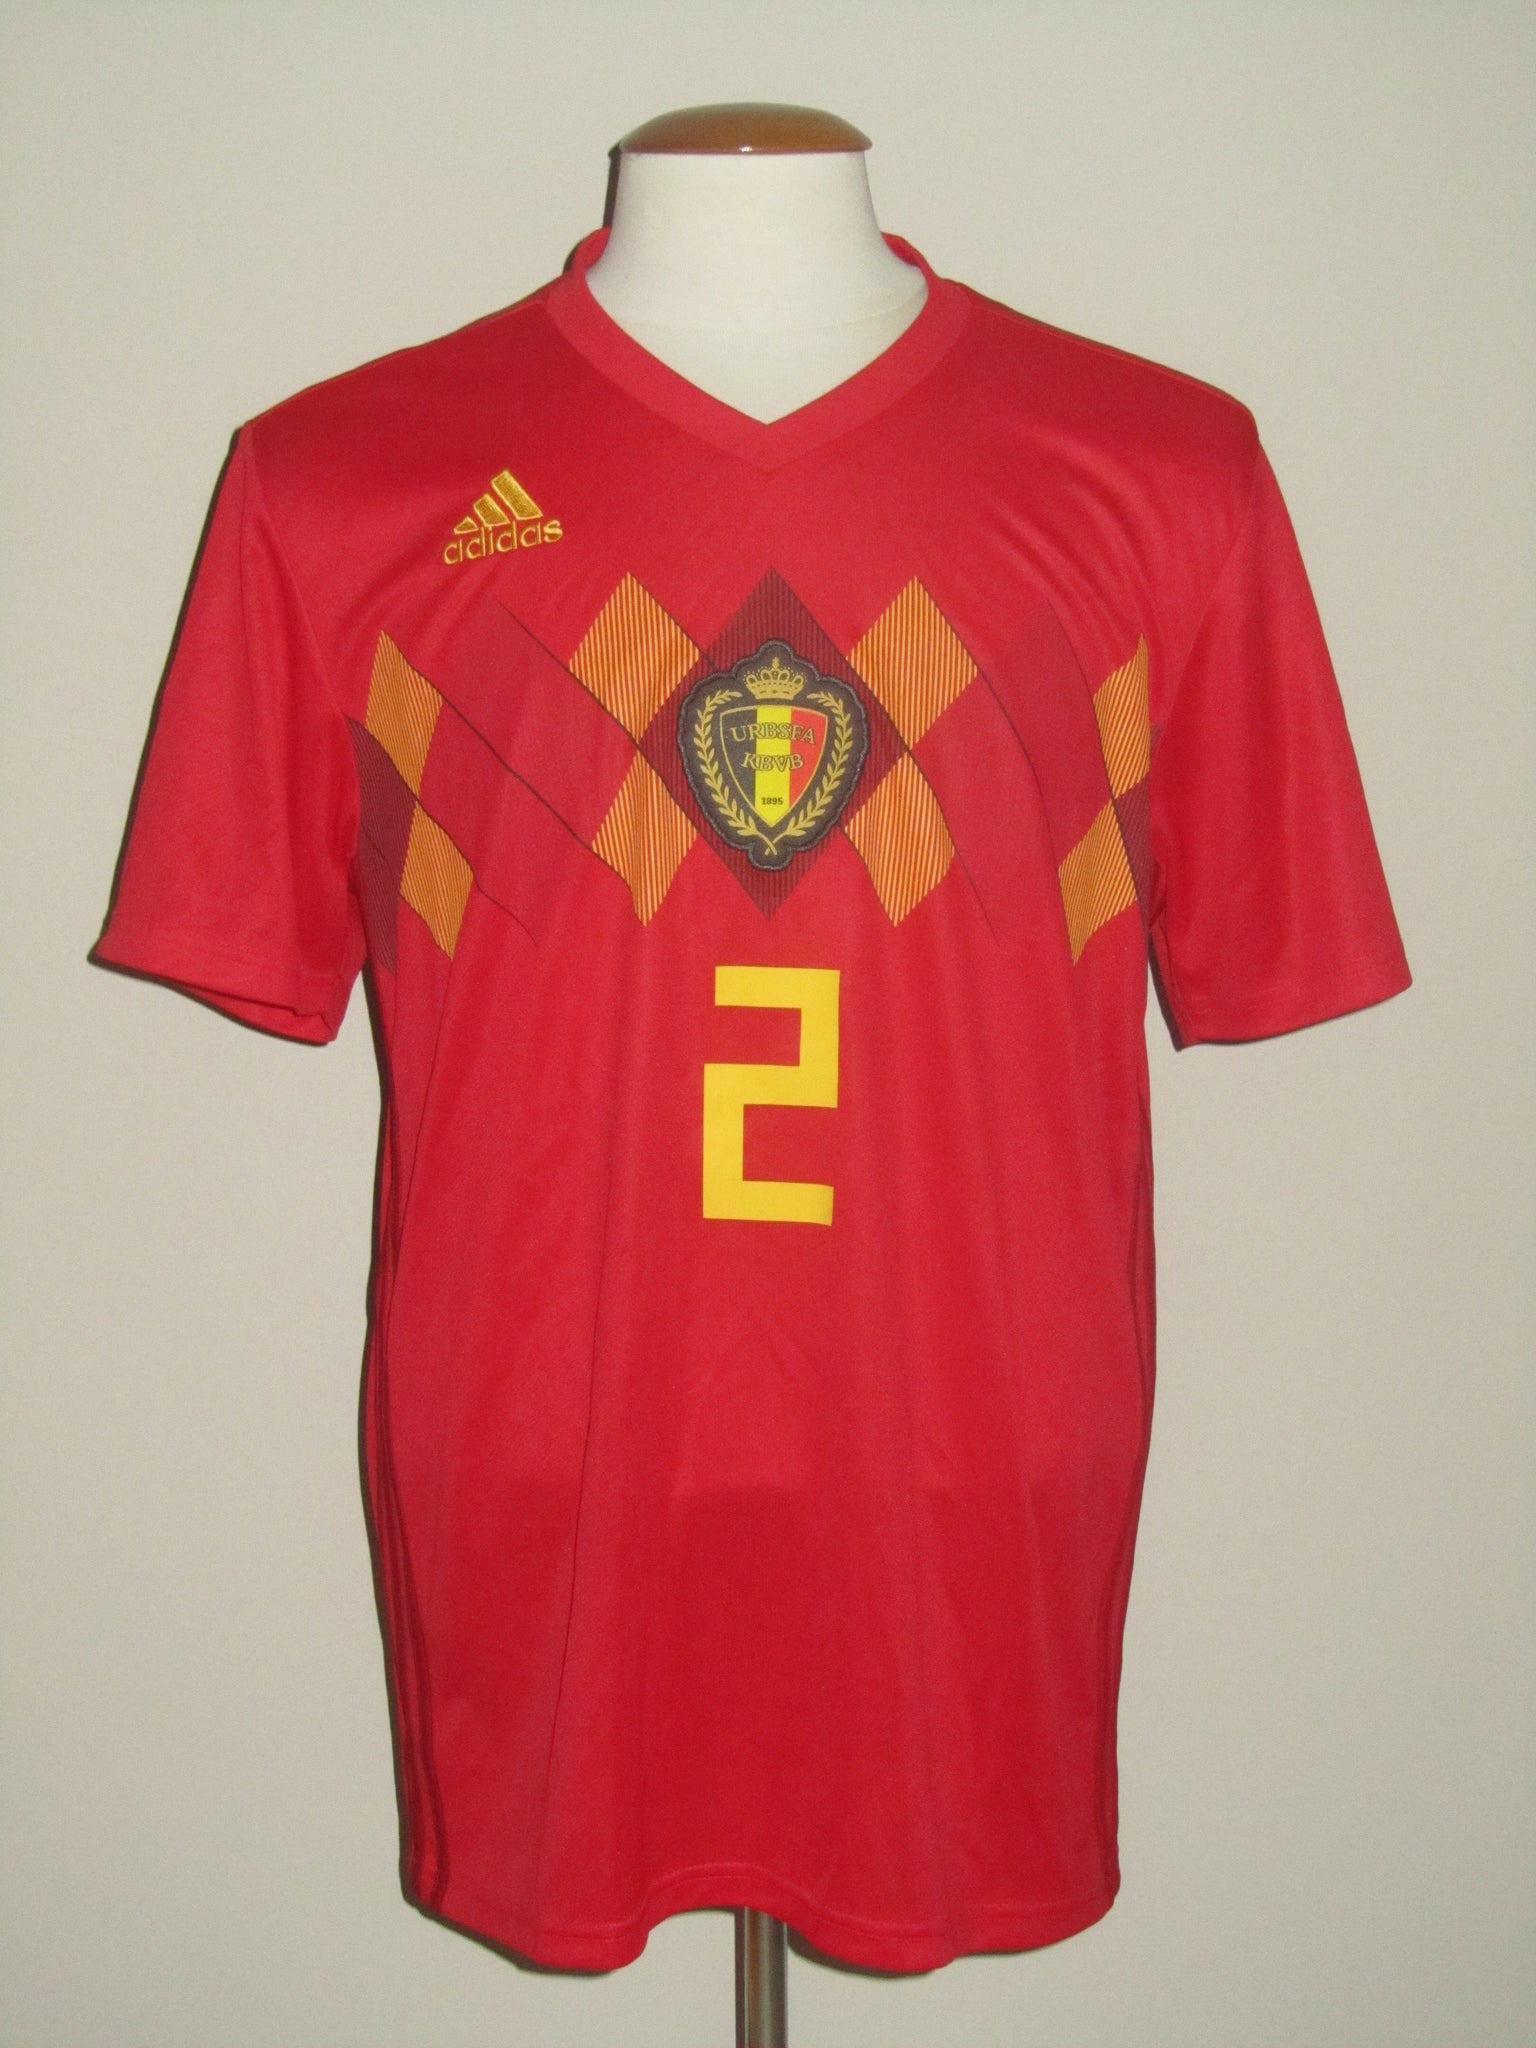 Toby Alderweireld's iconic Belgium kit